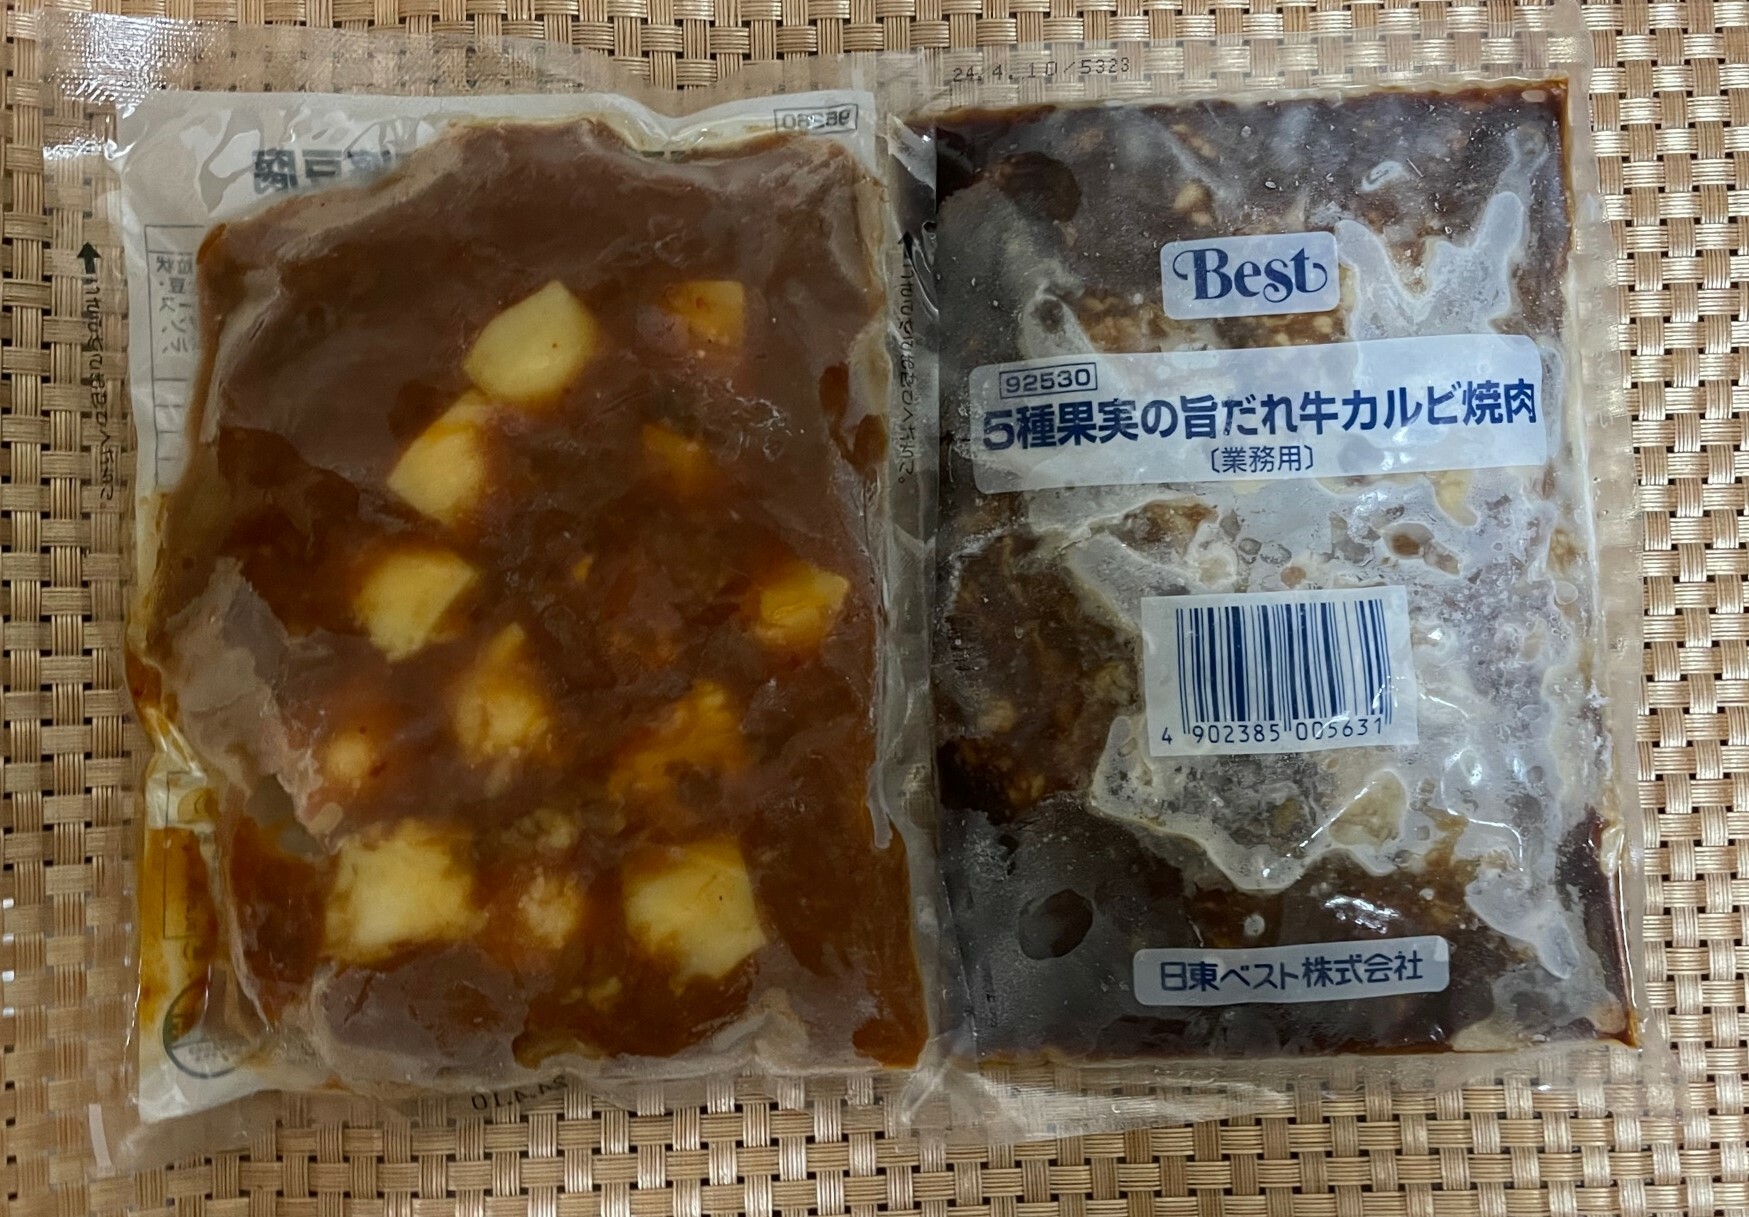 左の麻婆豆腐のパッケージは裏側